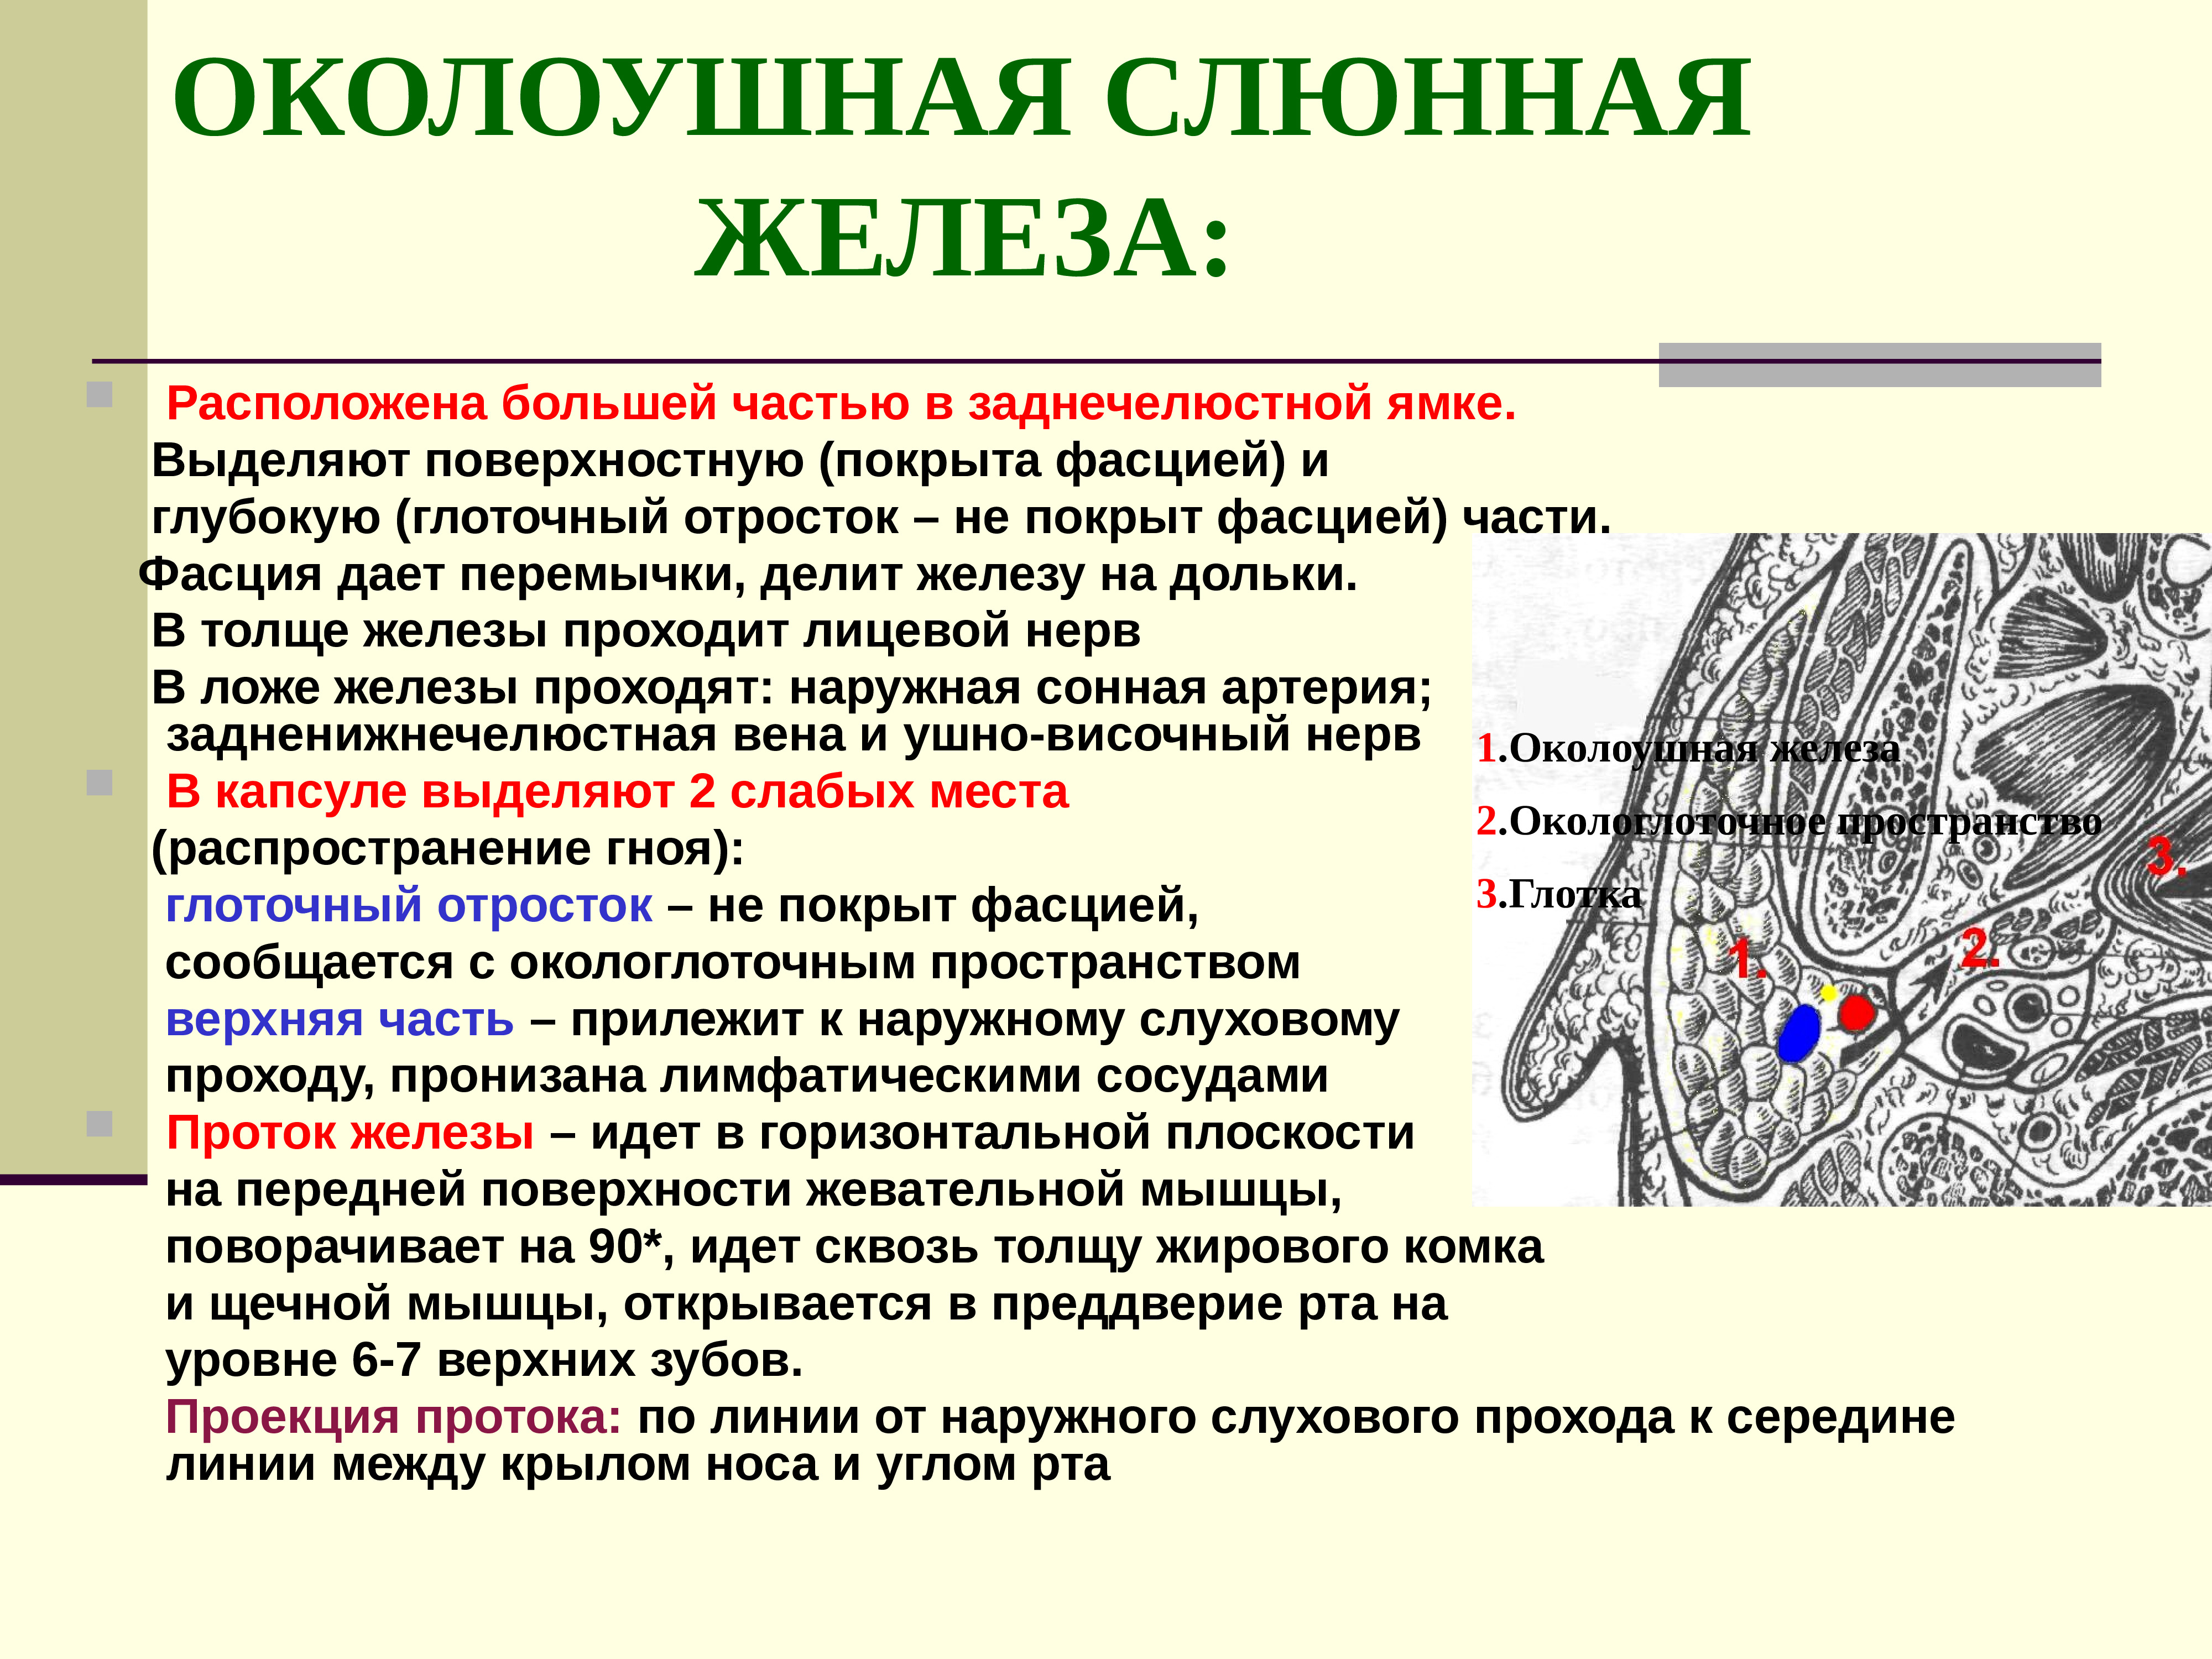 Околоушная железа является железой. Околоушная слюнная железа топографическая анатомия. Околоушная слюнная железа анатомия топография. Околоушная слюнная железа по строению является. Топография околоушной слюнной железы.